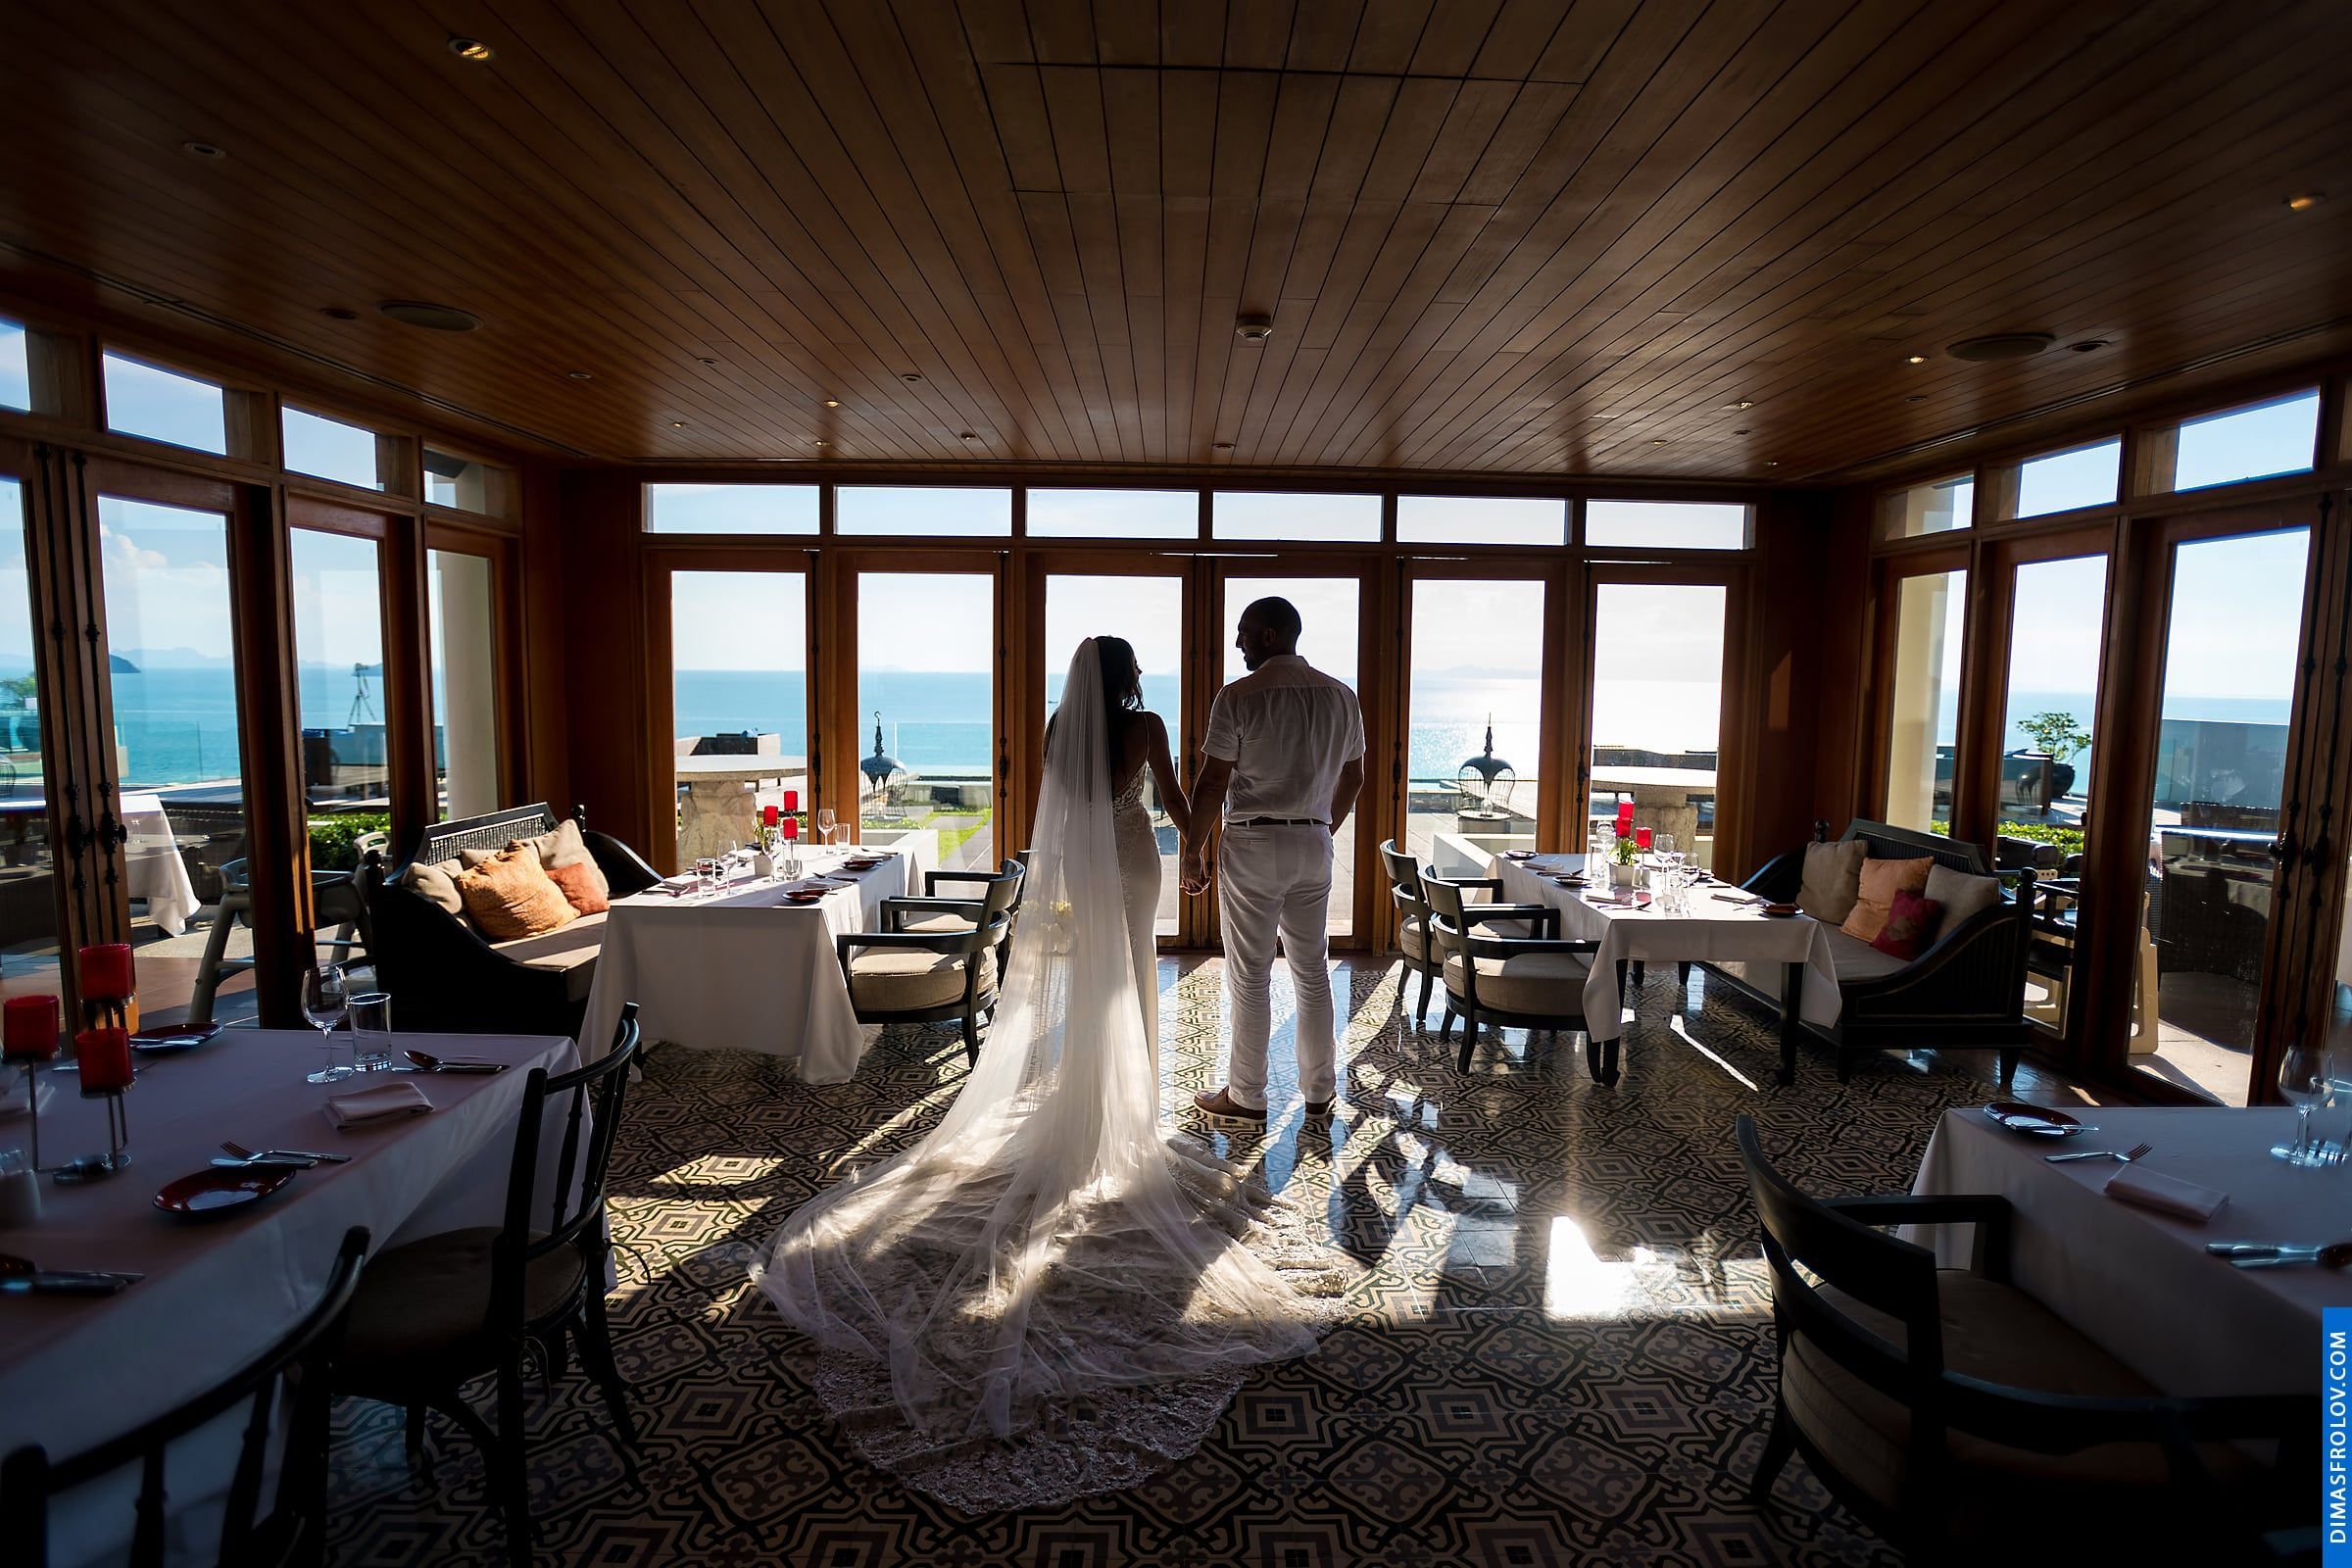 พิธีแต่งงาน ณ โรงแรมอินเตอร์คอนติเนนตัล เกาะสมุย - Natalie & Simon. บาทต่อภาพ 48367 (2023-05-04 03:54:40)